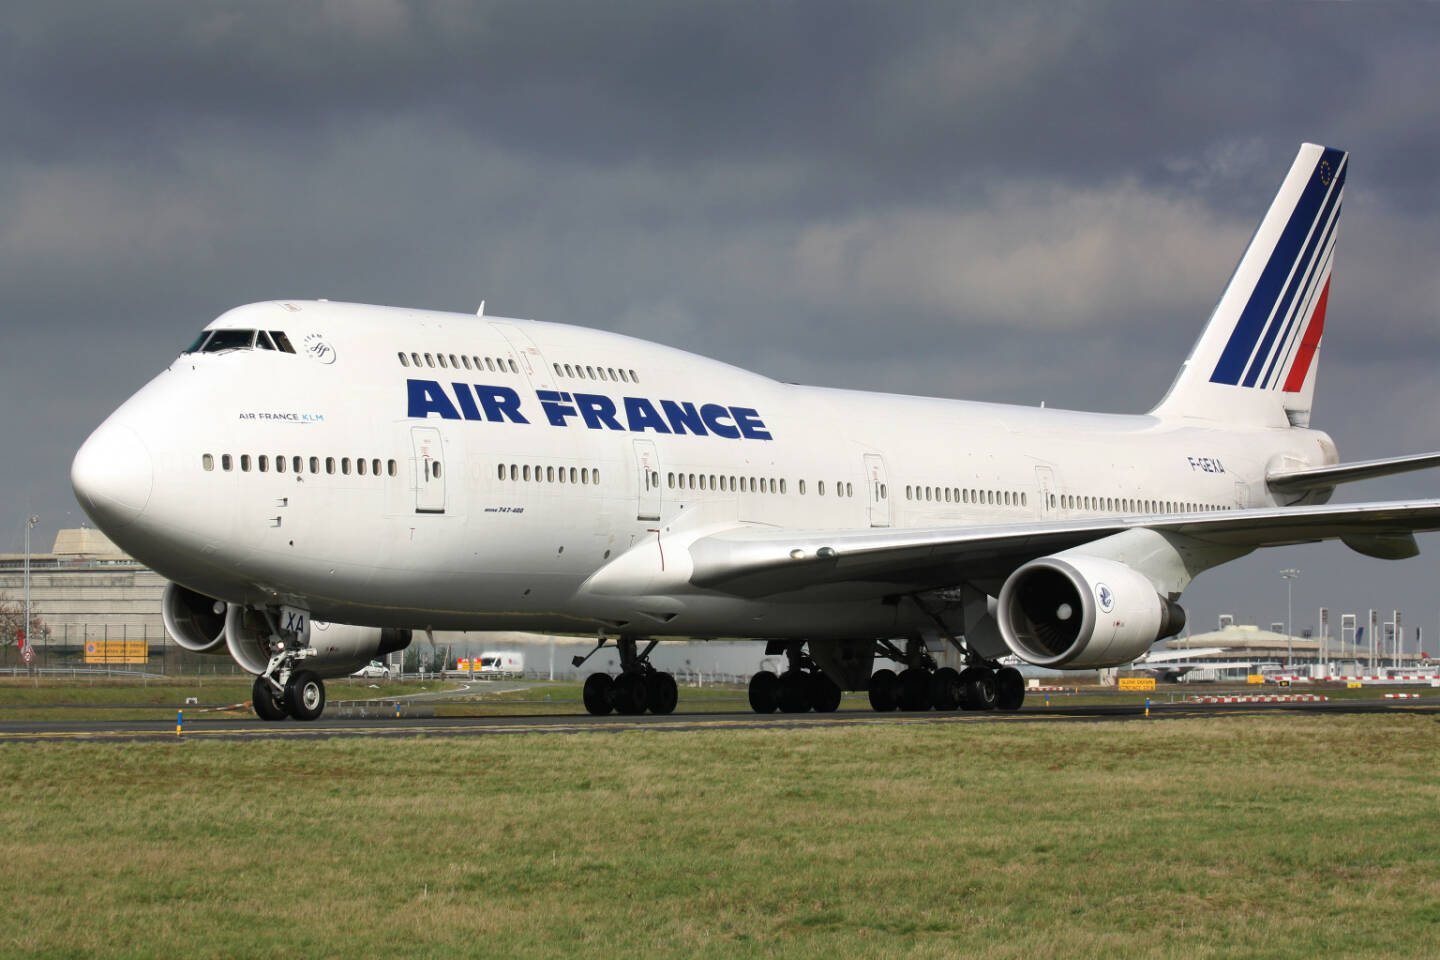 Air France Boeing B747-400 <a href=http://www.shutterstock.com/gallery-1462280p1.html?cr=00&pl=edit-00>Lukas Rebec</a> / <a href=http://www.shutterstock.com/editorial?cr=00&pl=edit-00>Shutterstock.com</a>